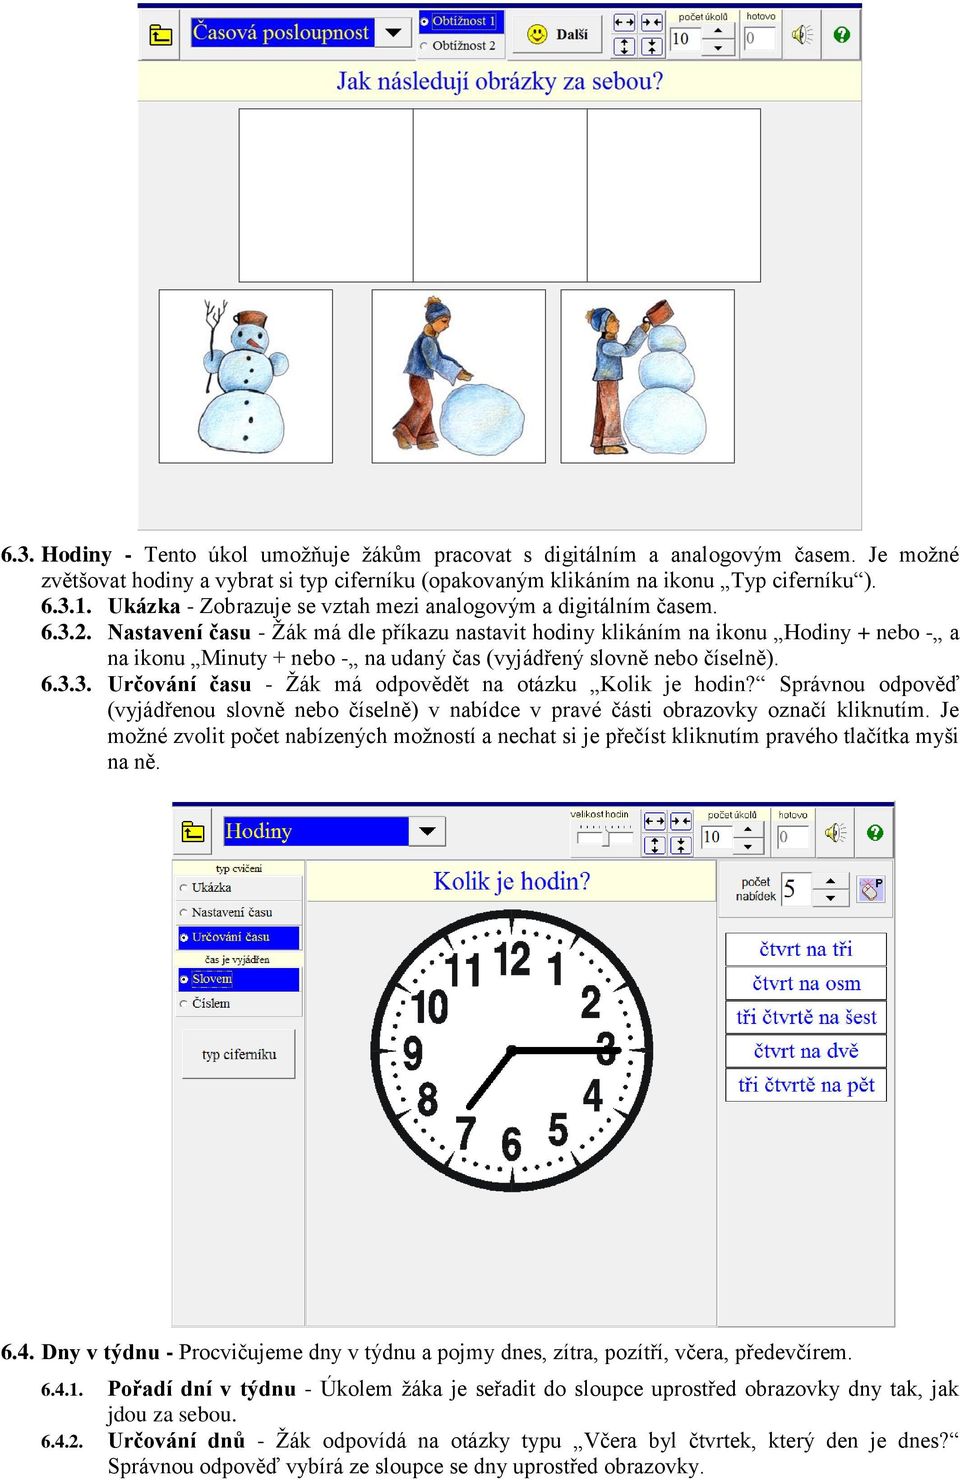 Nastavení času - Žák má dle příkazu nastavit hodiny klikáním na ikonu Hodiny + nebo - a na ikonu Minuty + nebo - na udaný čas (vyjádřený slovně nebo číselně). 6.3.